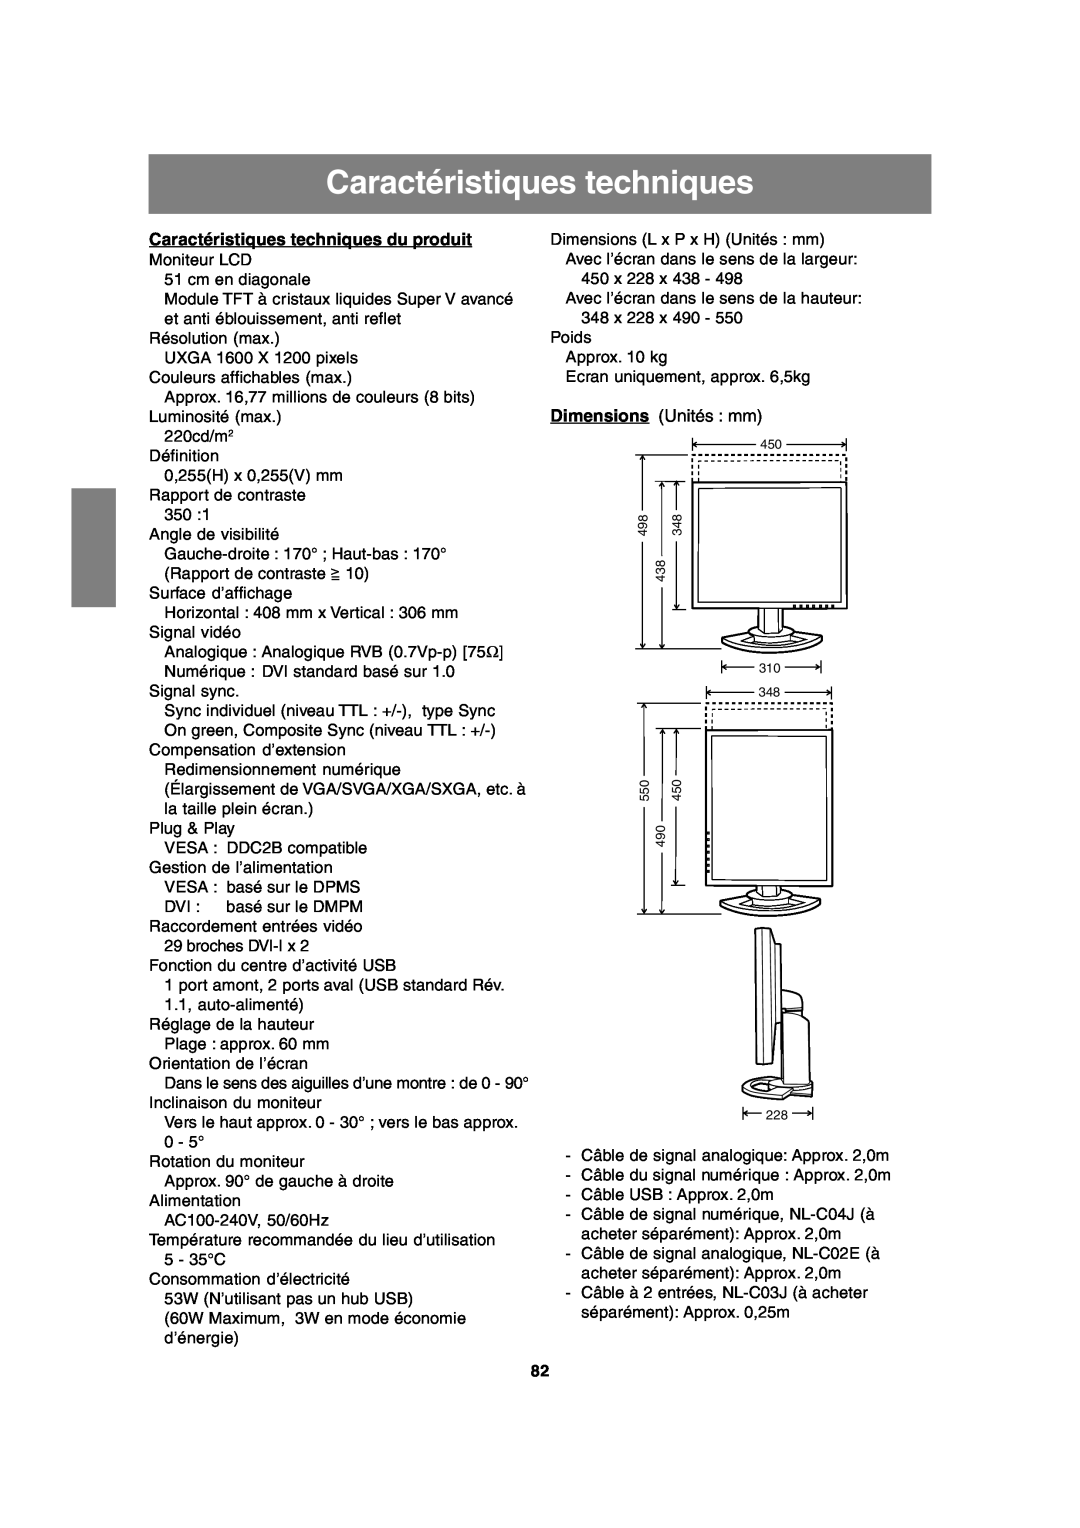 Sharp LL-T2020 operation manual Caractéristiques techniques du produit, Dimensions Unités mm 